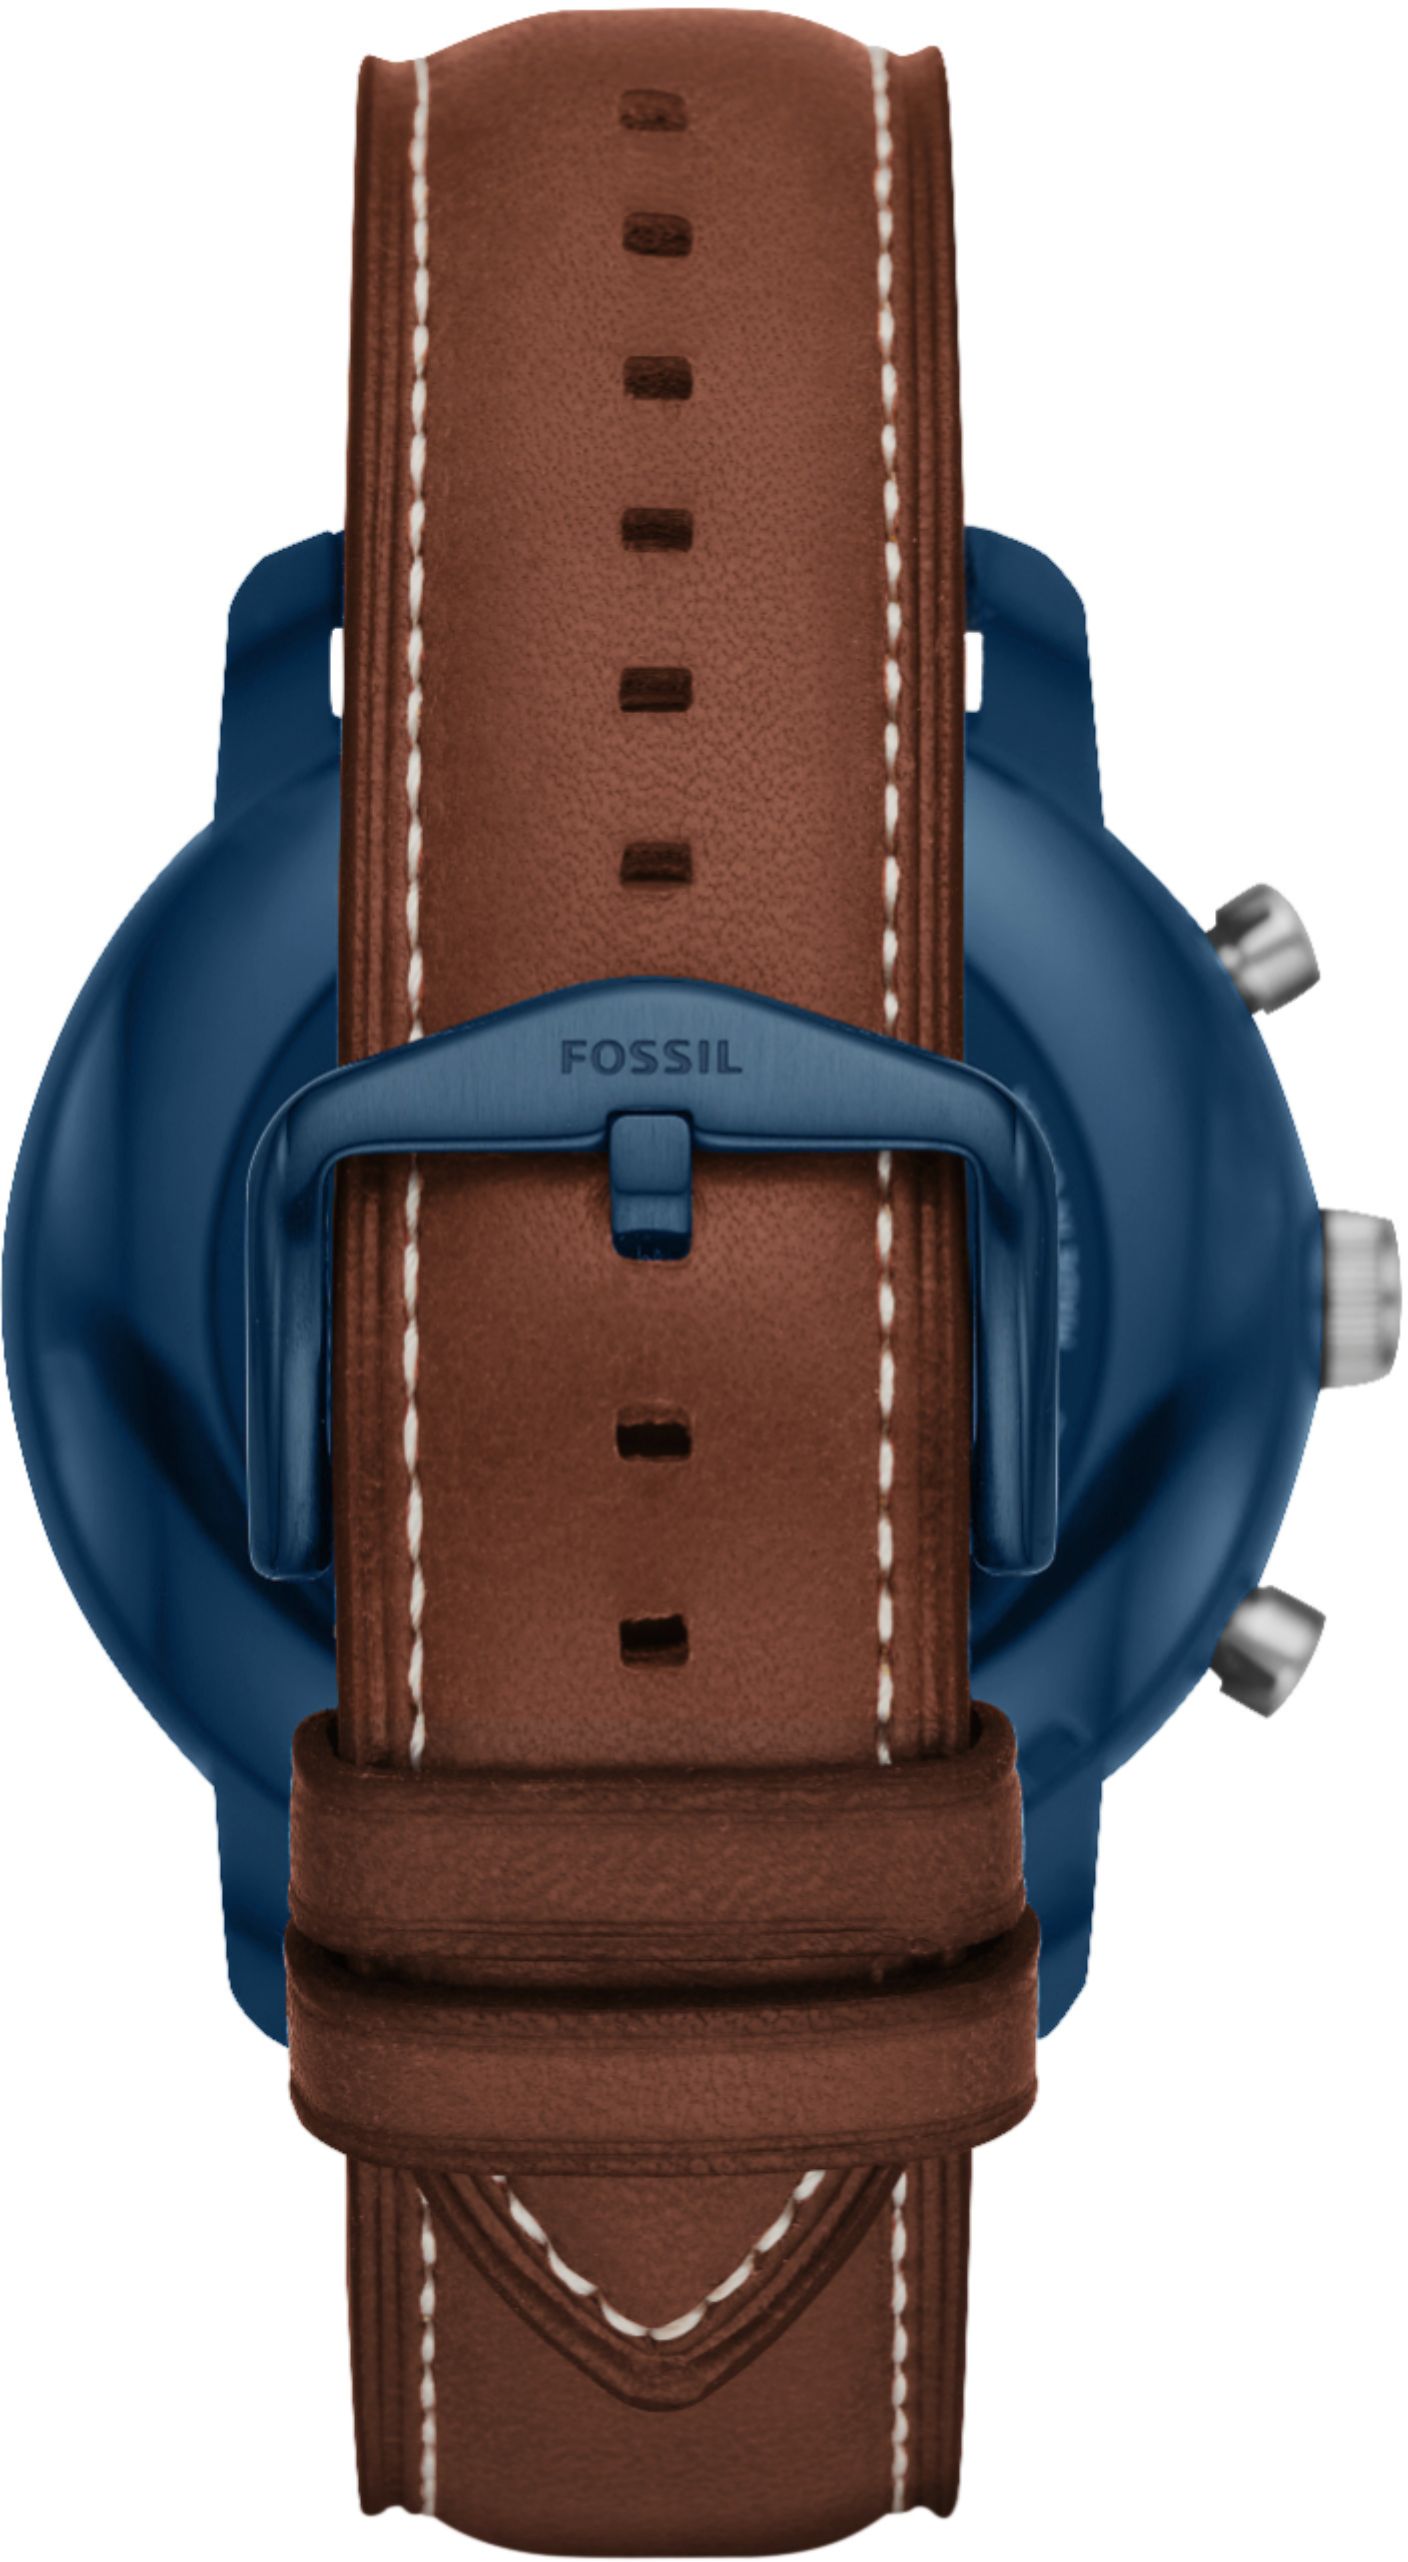 Buy: Fossil Q Explorist Gen 3 Smartwatch 46mm Steel FTW4004